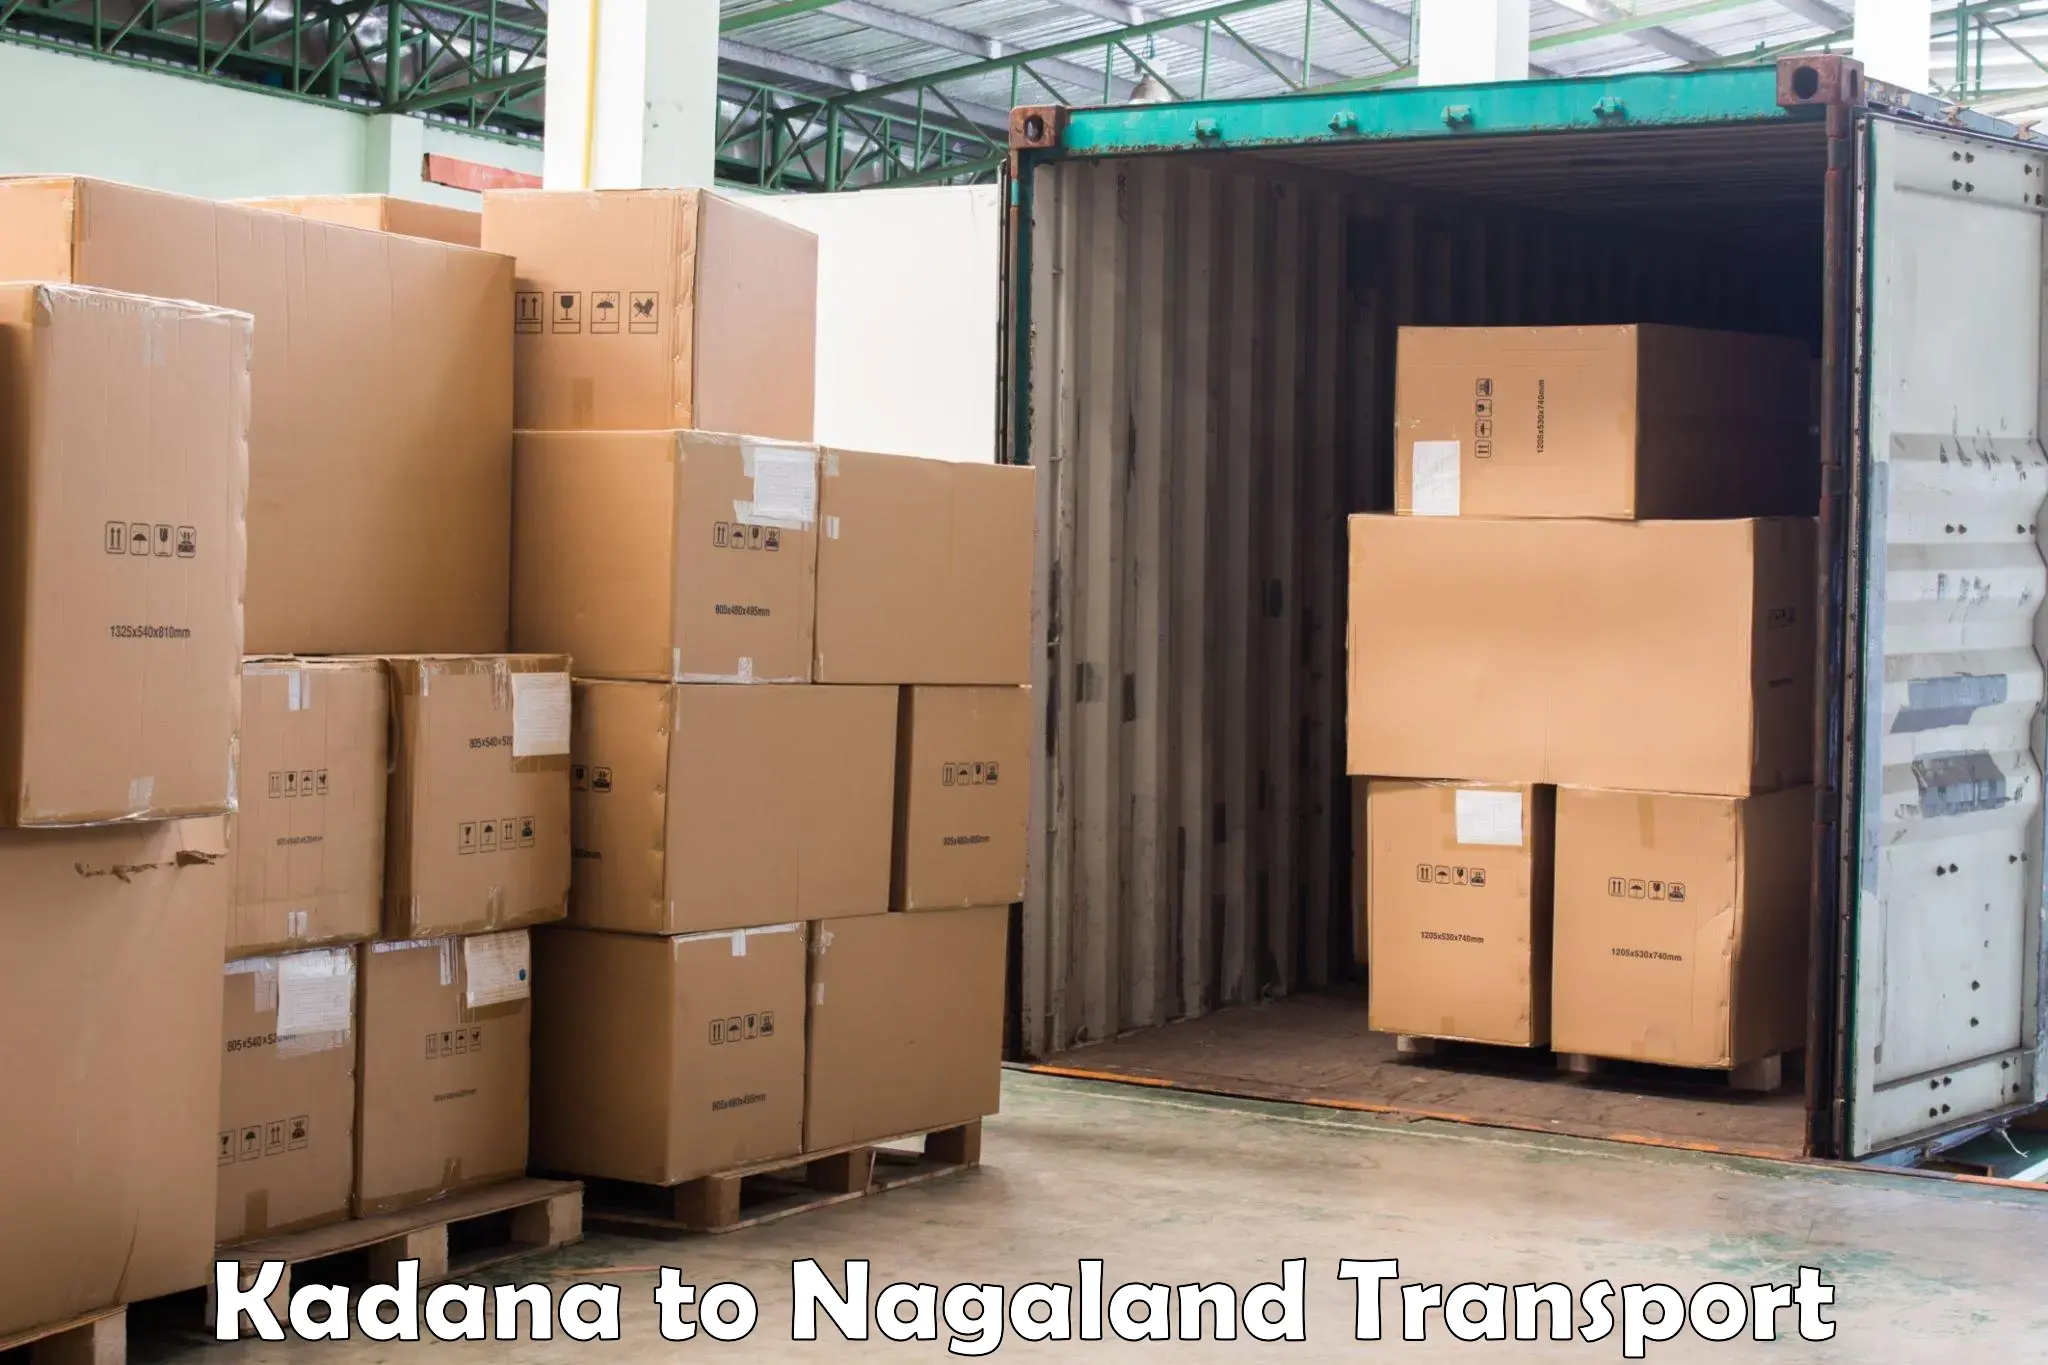 Daily parcel service transport Kadana to NIT Nagaland